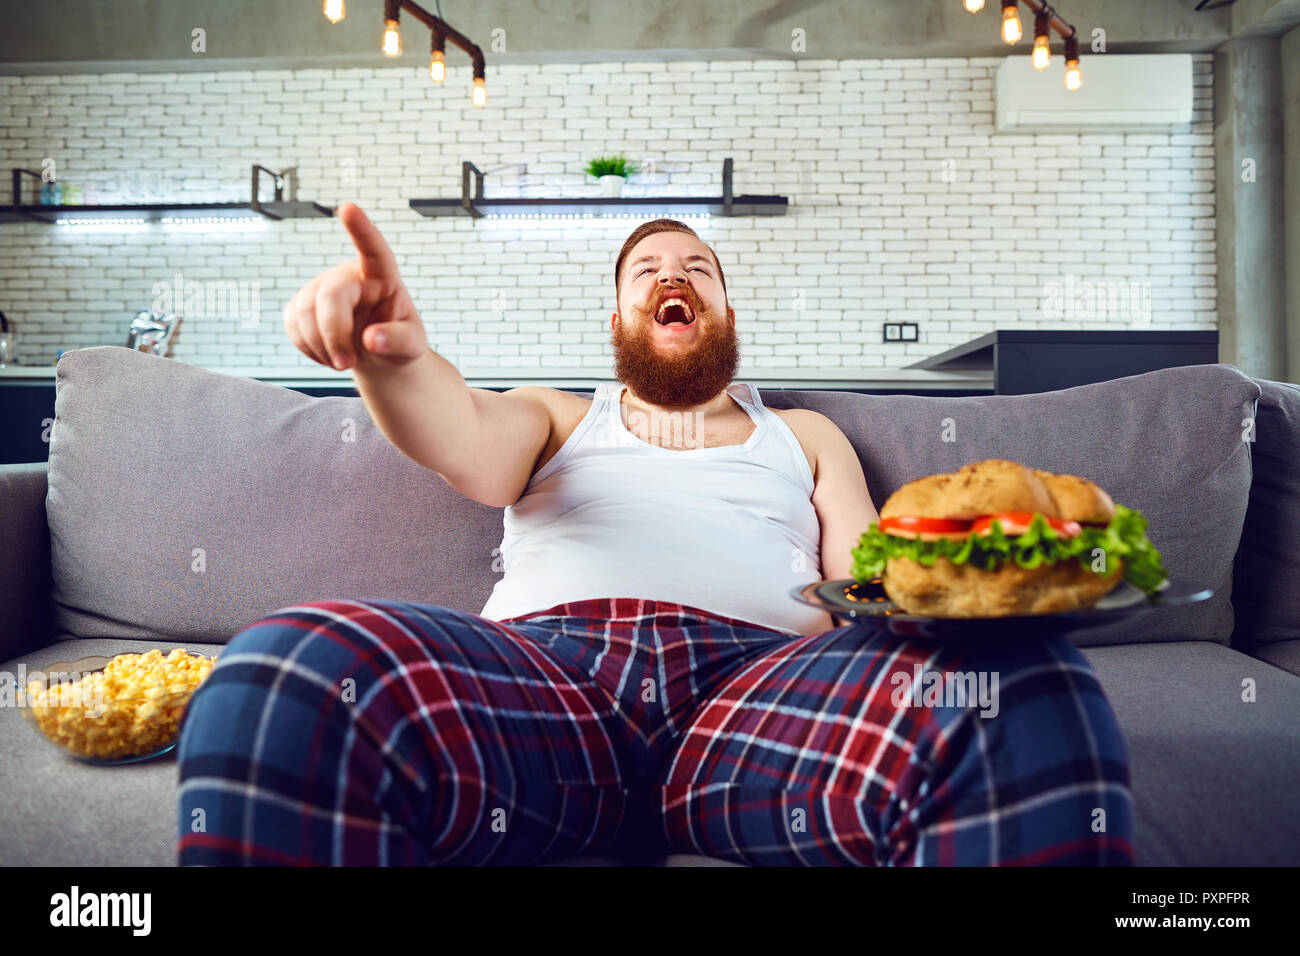 Dicke Lustiger Mann Mit Einem Burger Sitzen Auf Der Couch Stockfotografie Alamy